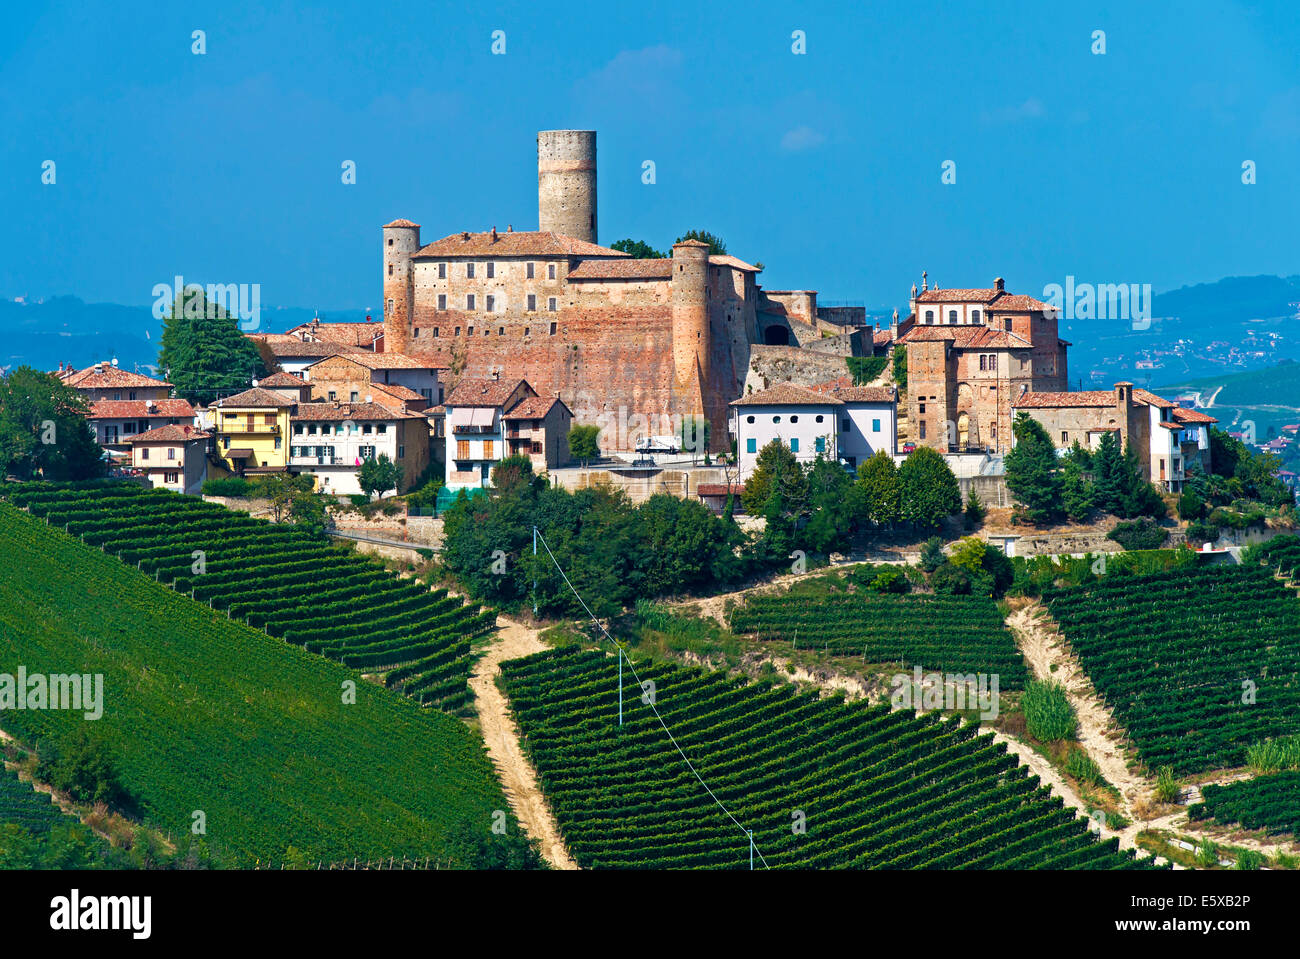 The castle of Castiglione Falletto rising above vineyards, Castiglione Falletto, Province of Cuneo, Piedmont, Italy Stock Photo